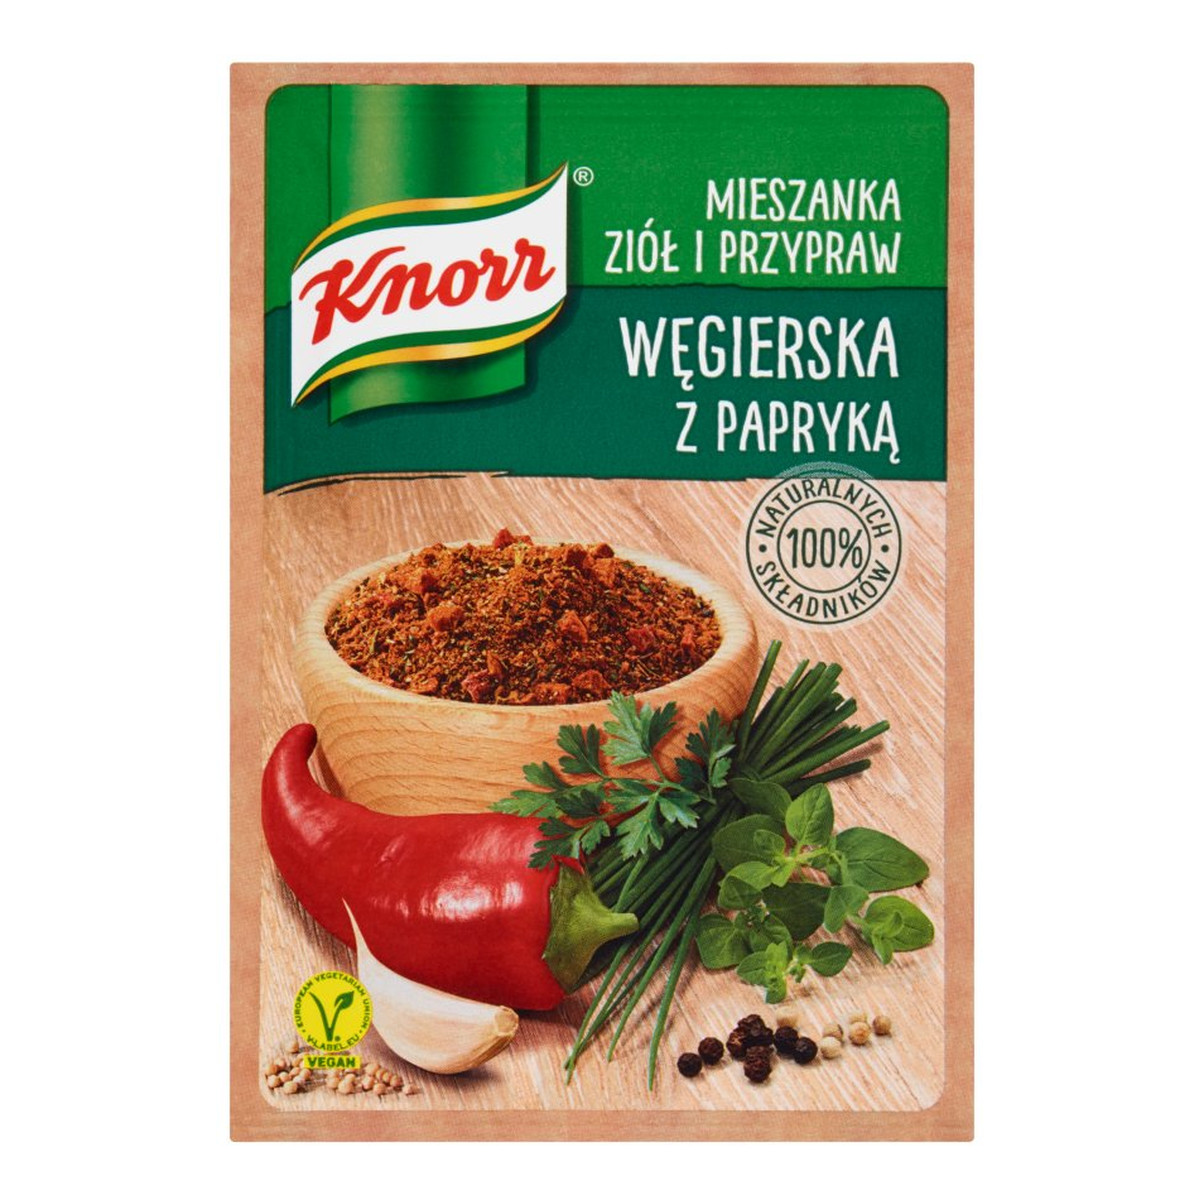 Knorr Mieszanka ziół i przypraw węgierska z papryką 13g